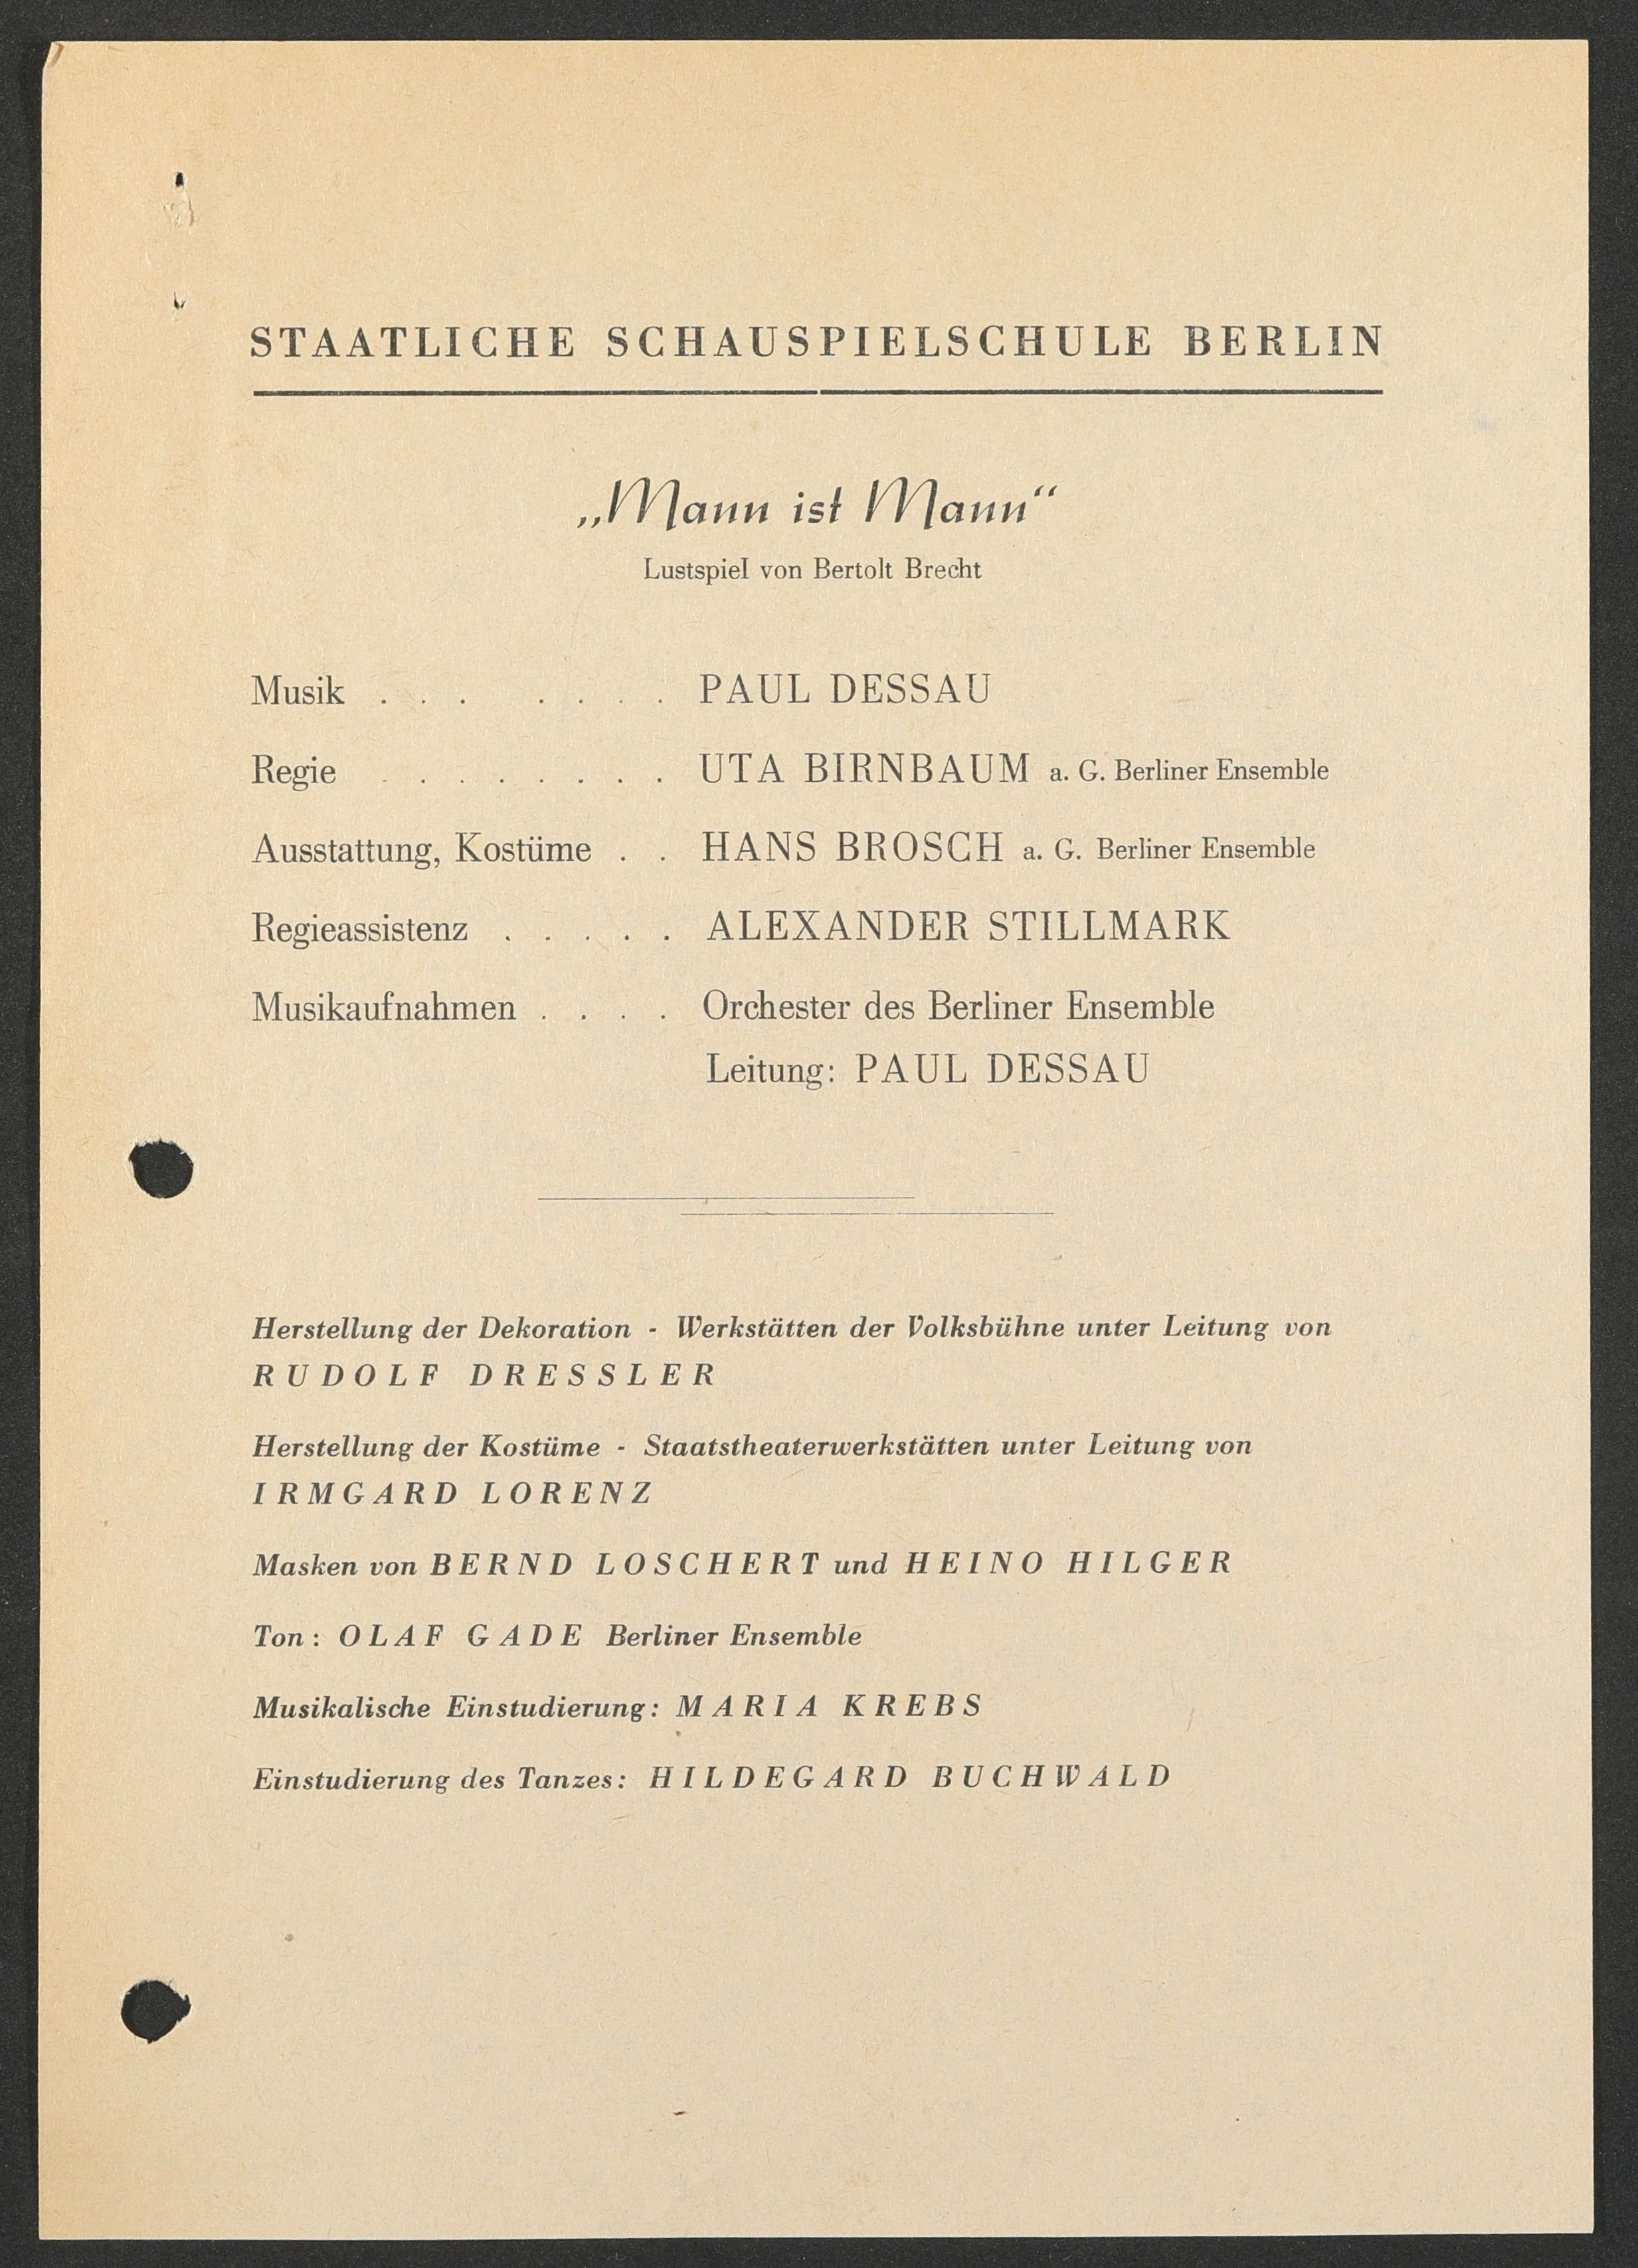 Programmzettel zu "Mann ist Mann" am bat-Studiotheater 1964 (Hochschule für Schauspielkunst Ernst Busch Berlin RR-F)